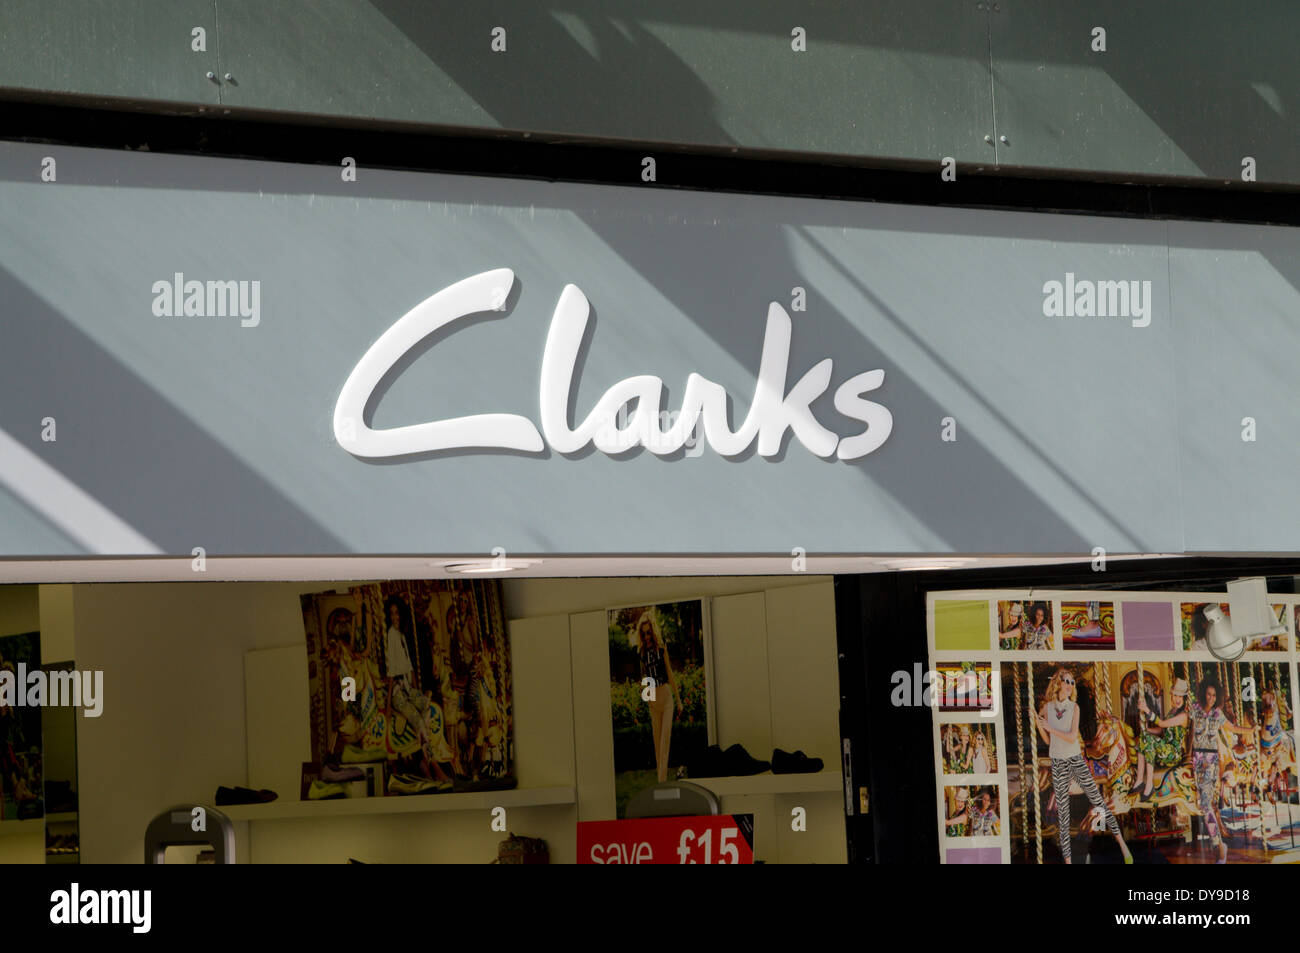 Magasin de chaussures Clarks, Cardiff, Pays de Galles. Banque D'Images